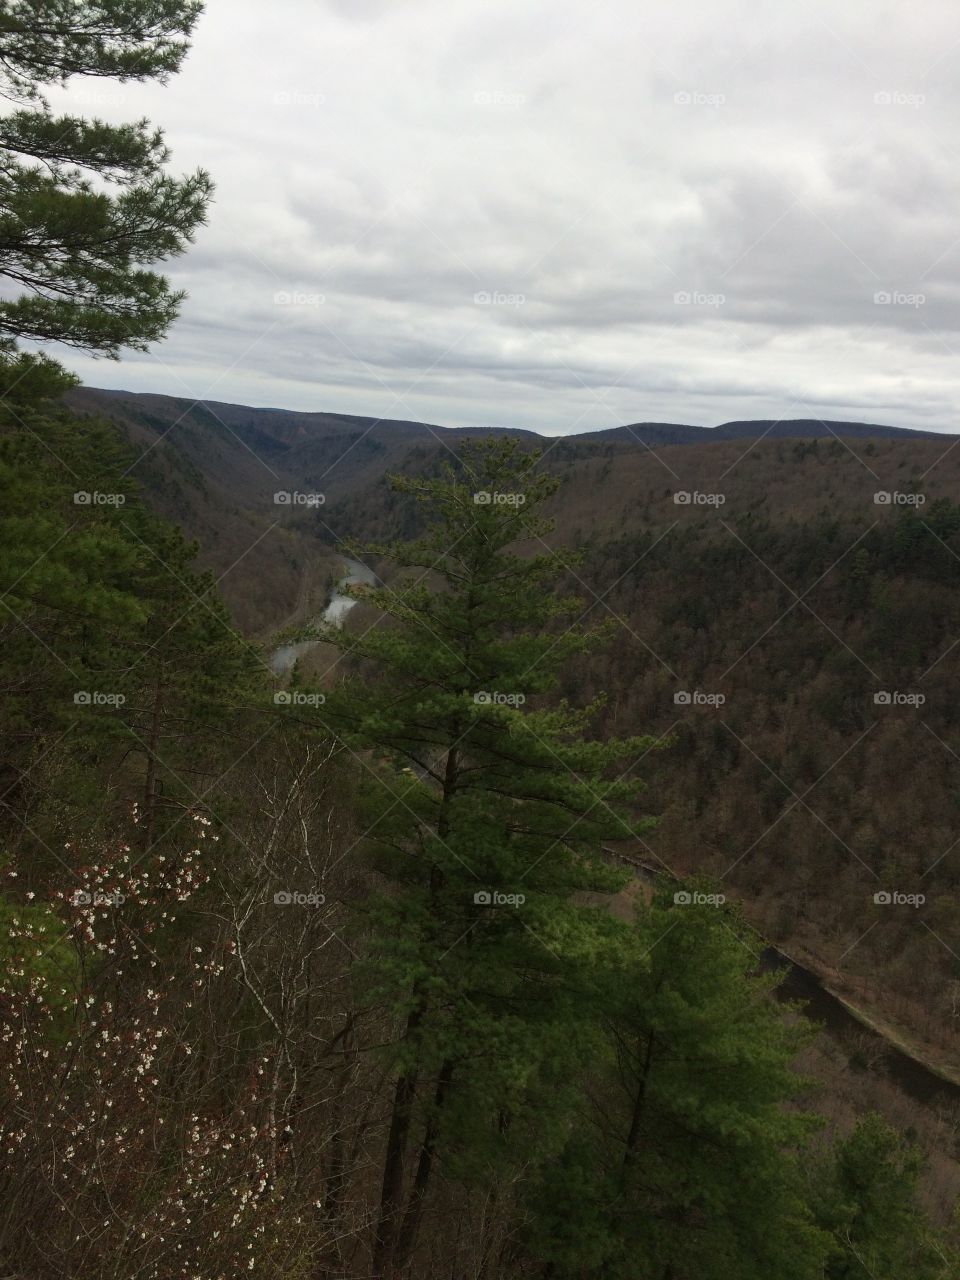 Pennsylvania gorge